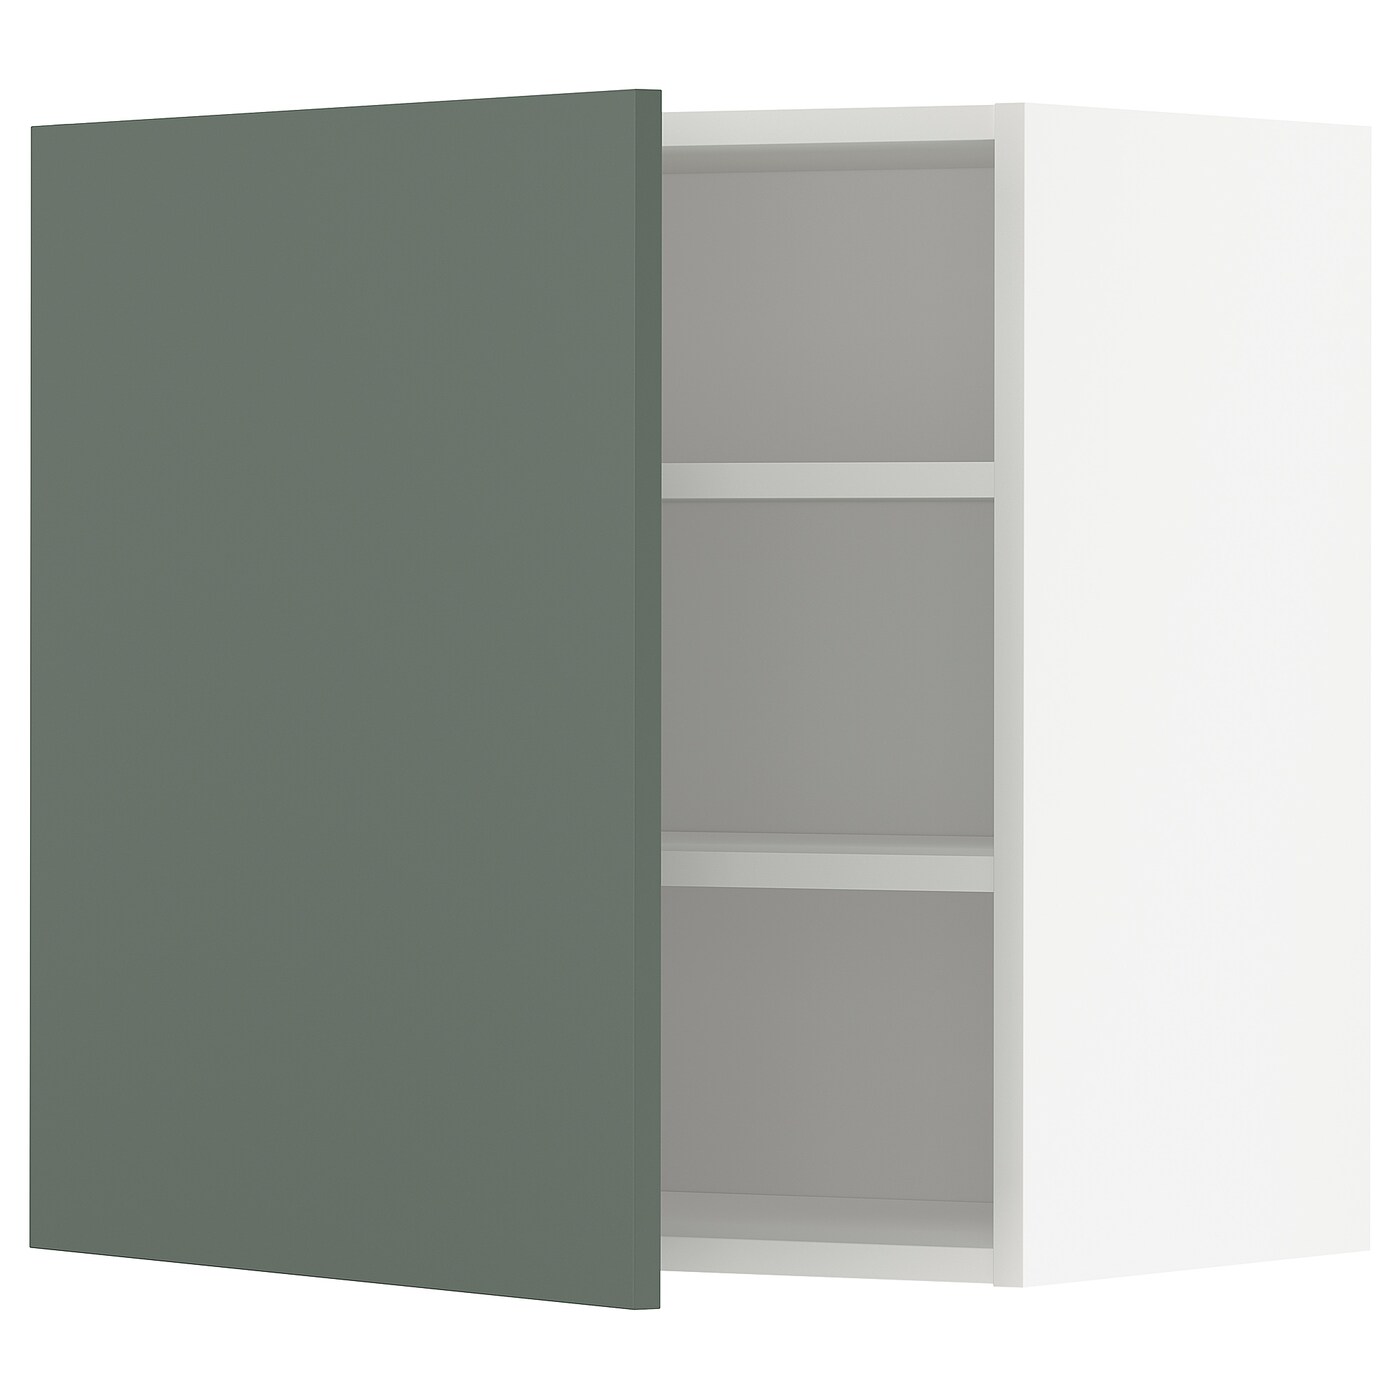 Навесной шкаф с полкой - METOD IKEA/ МЕТОД ИКЕА, 60х60 см, белый/темно-зеленый